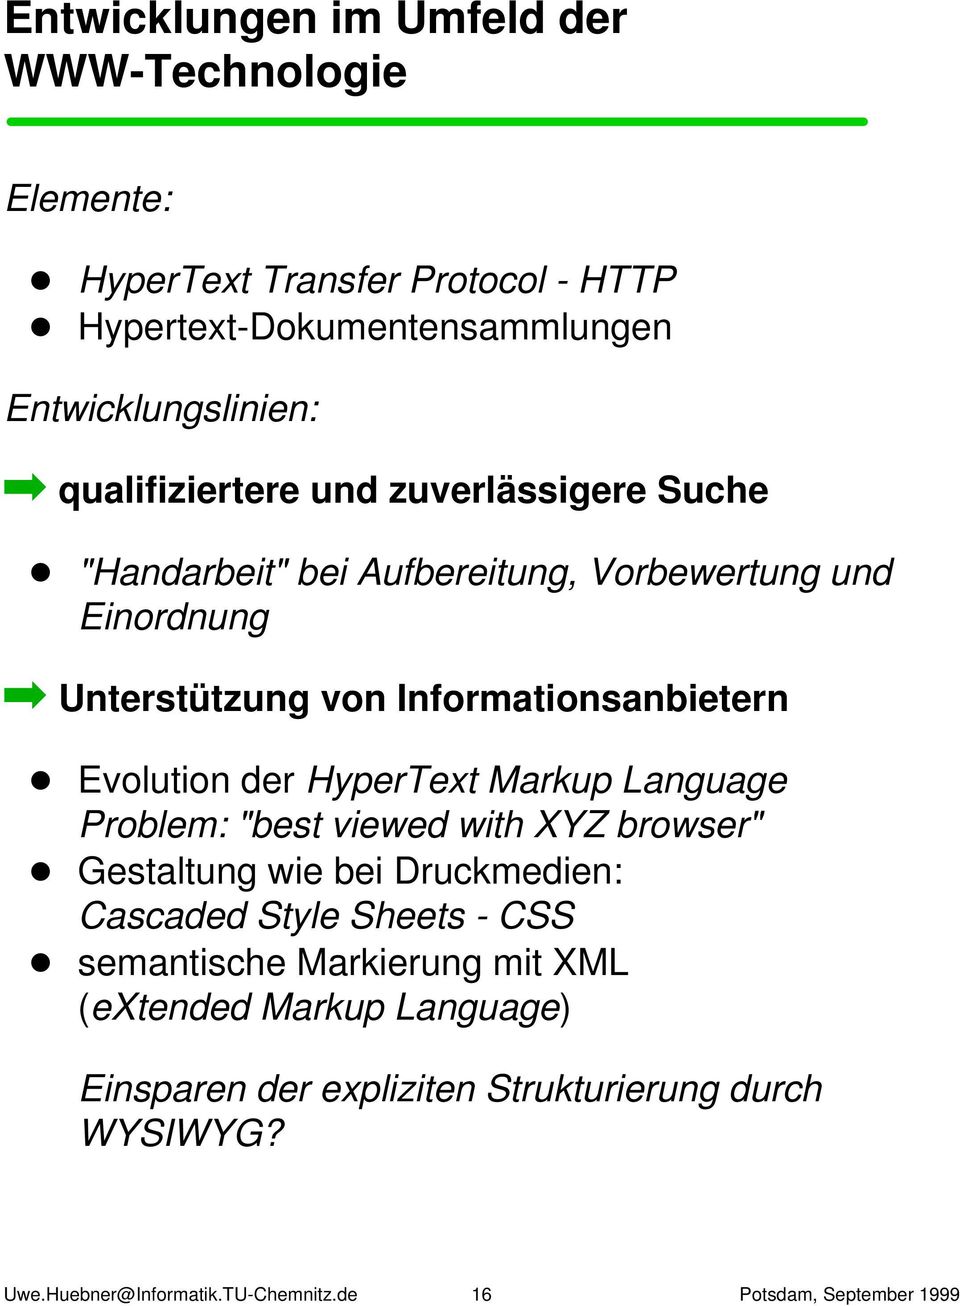 Evolution der HyperText Markup Language Problem: "best viewed with XYZ browser" Gestaltung wie bei Druckmedien: Cascaded Style Sheets - CSS